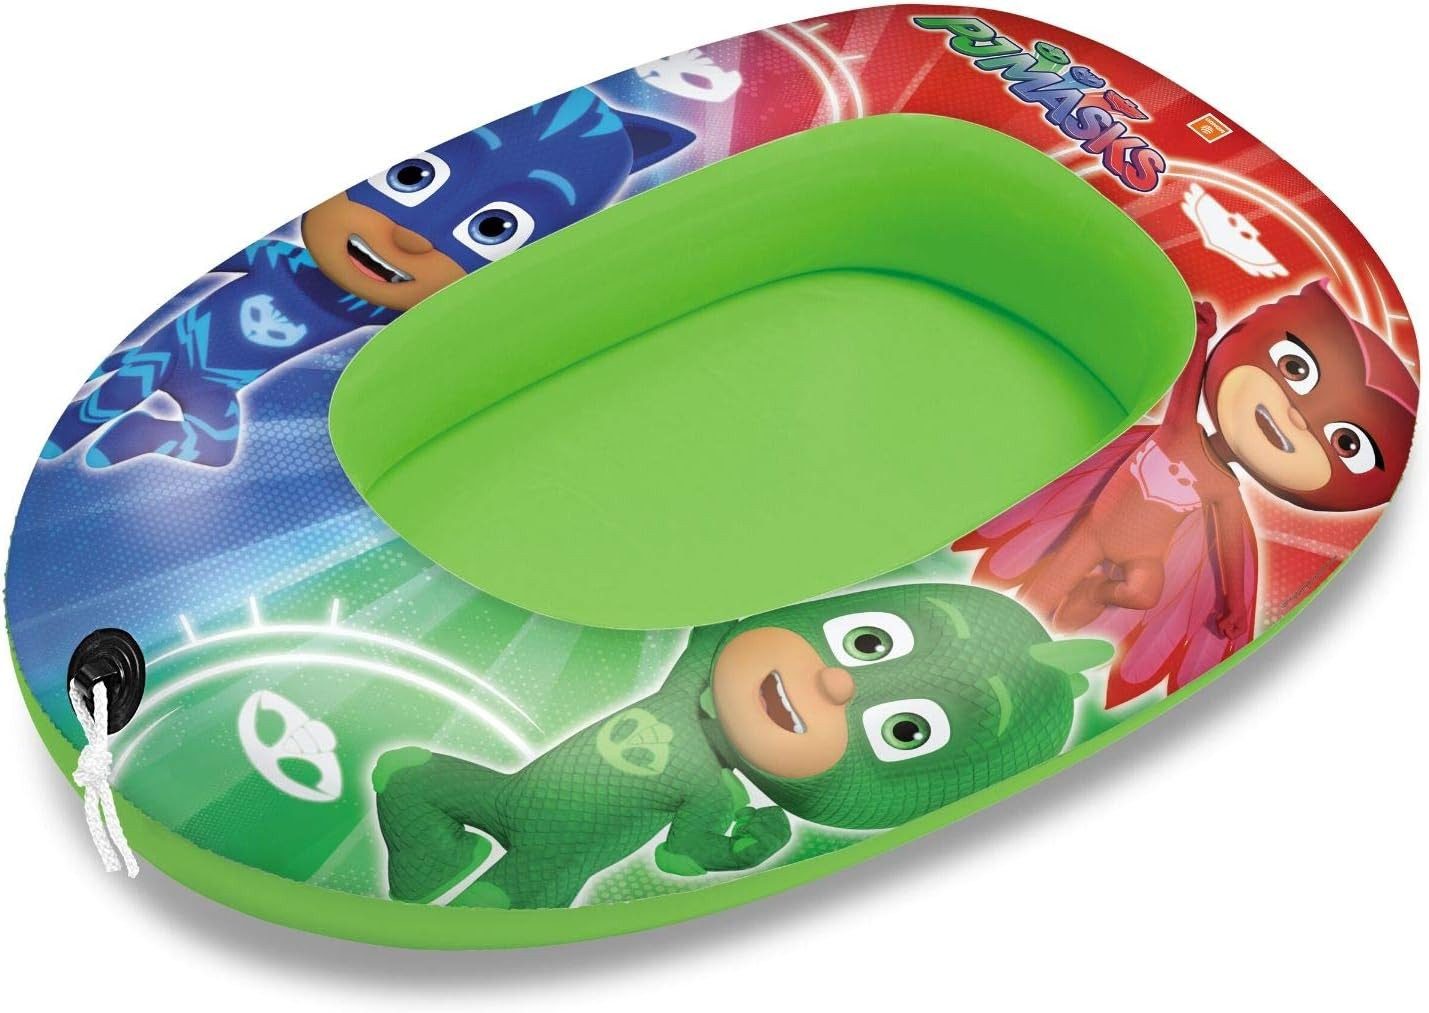 Preis-Shop24 Kinder-Schlauchboot Masks 94 cm Boot Pyjamahelden Design für Kinder Schlauchboot Gummiboot